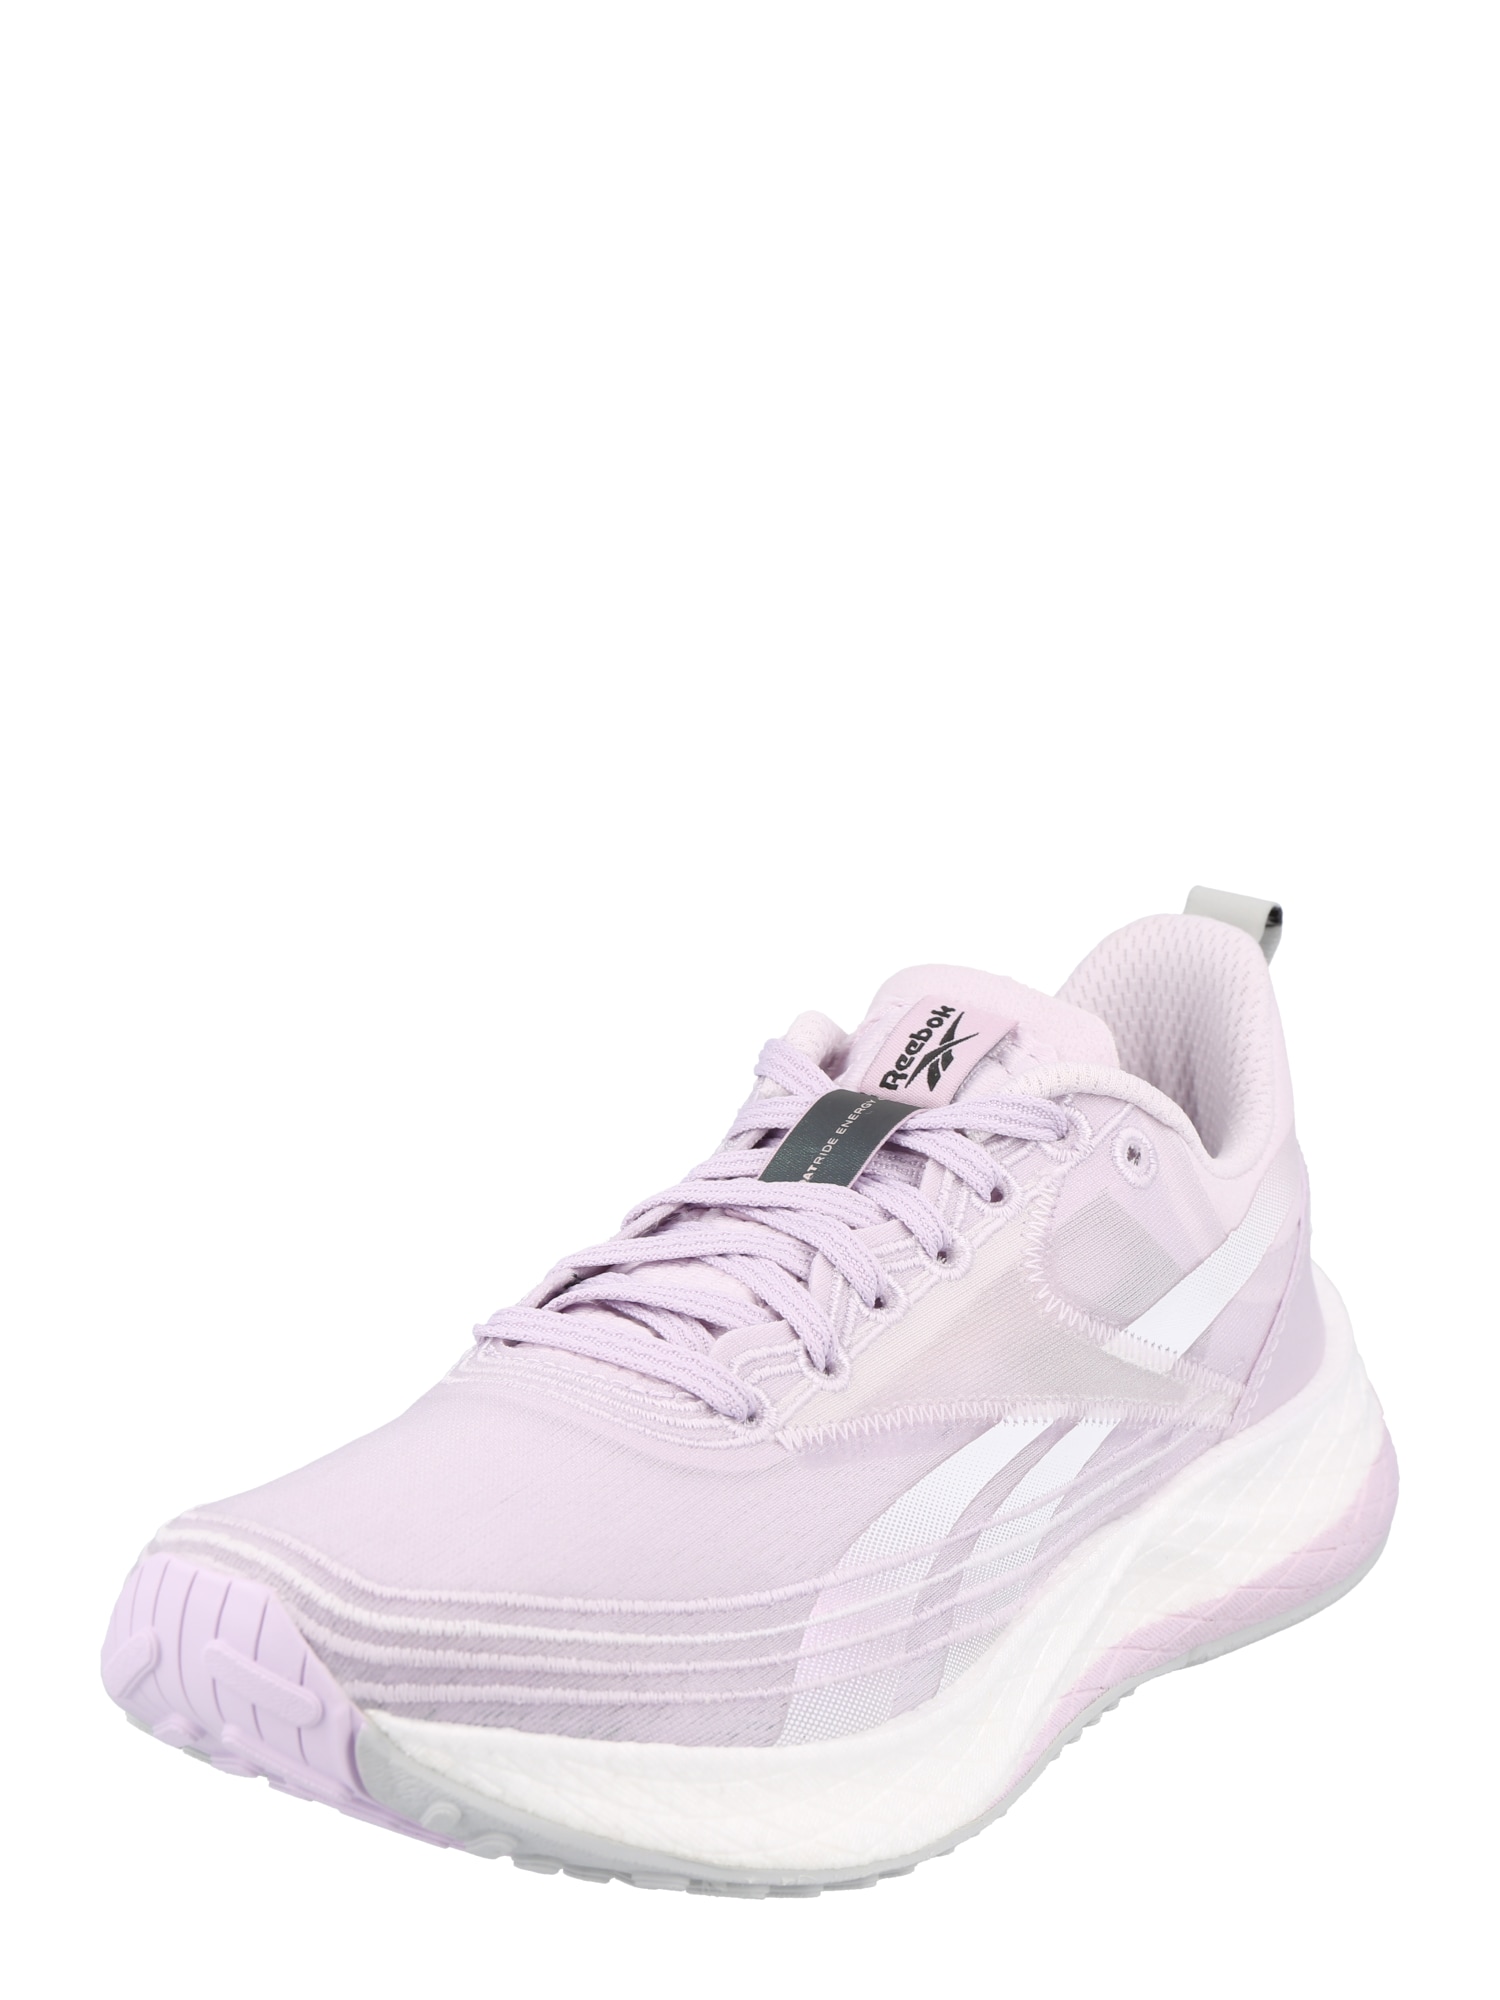 Reebok Sport Bėgimo batai 'Floatride Energy 4' balkšva / šviesiai violetinė